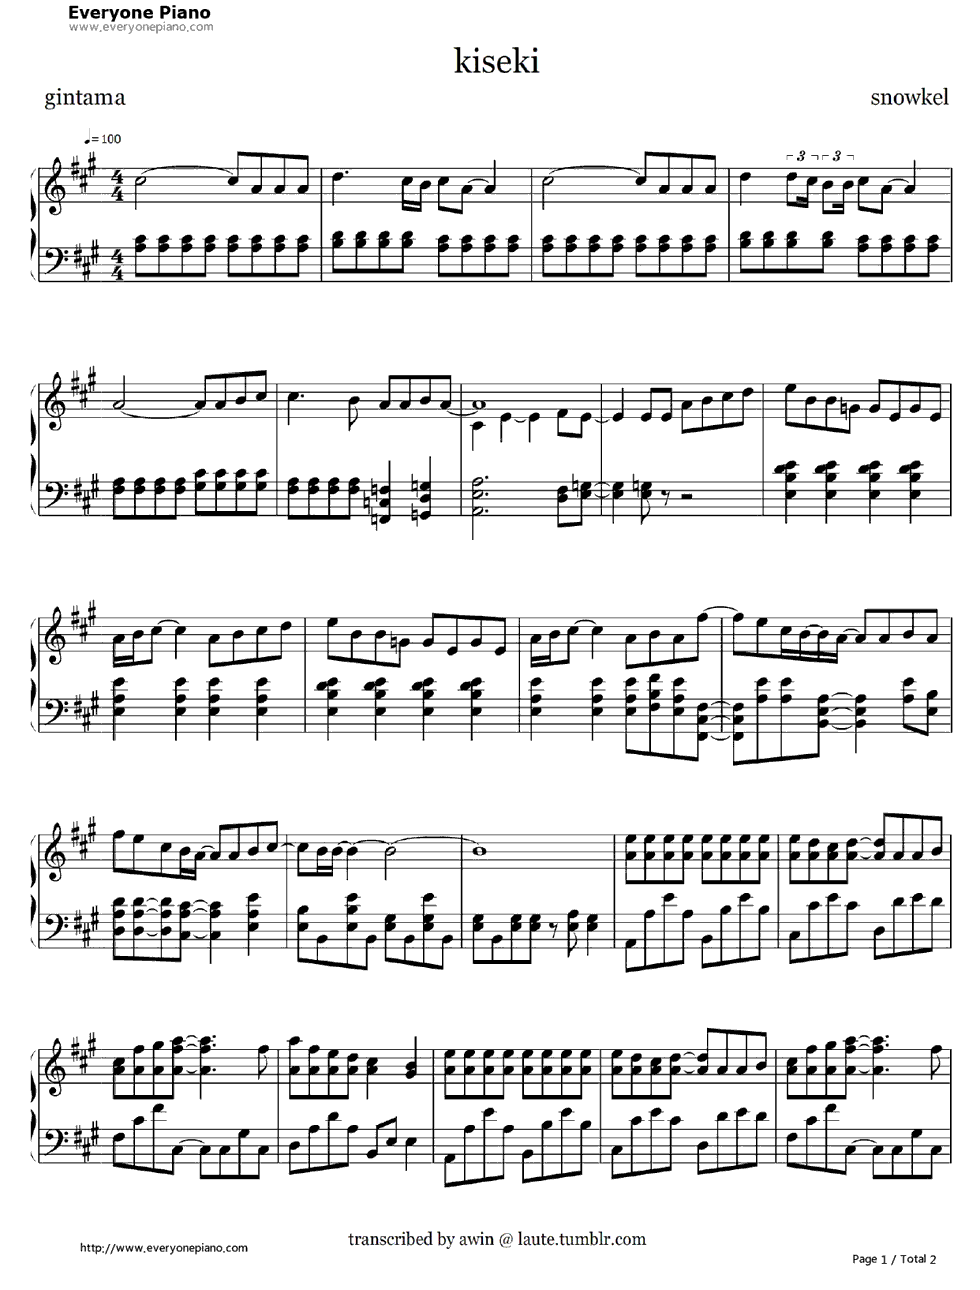 奇跡钢琴谱-シュノ一ケル（Snowkel）1